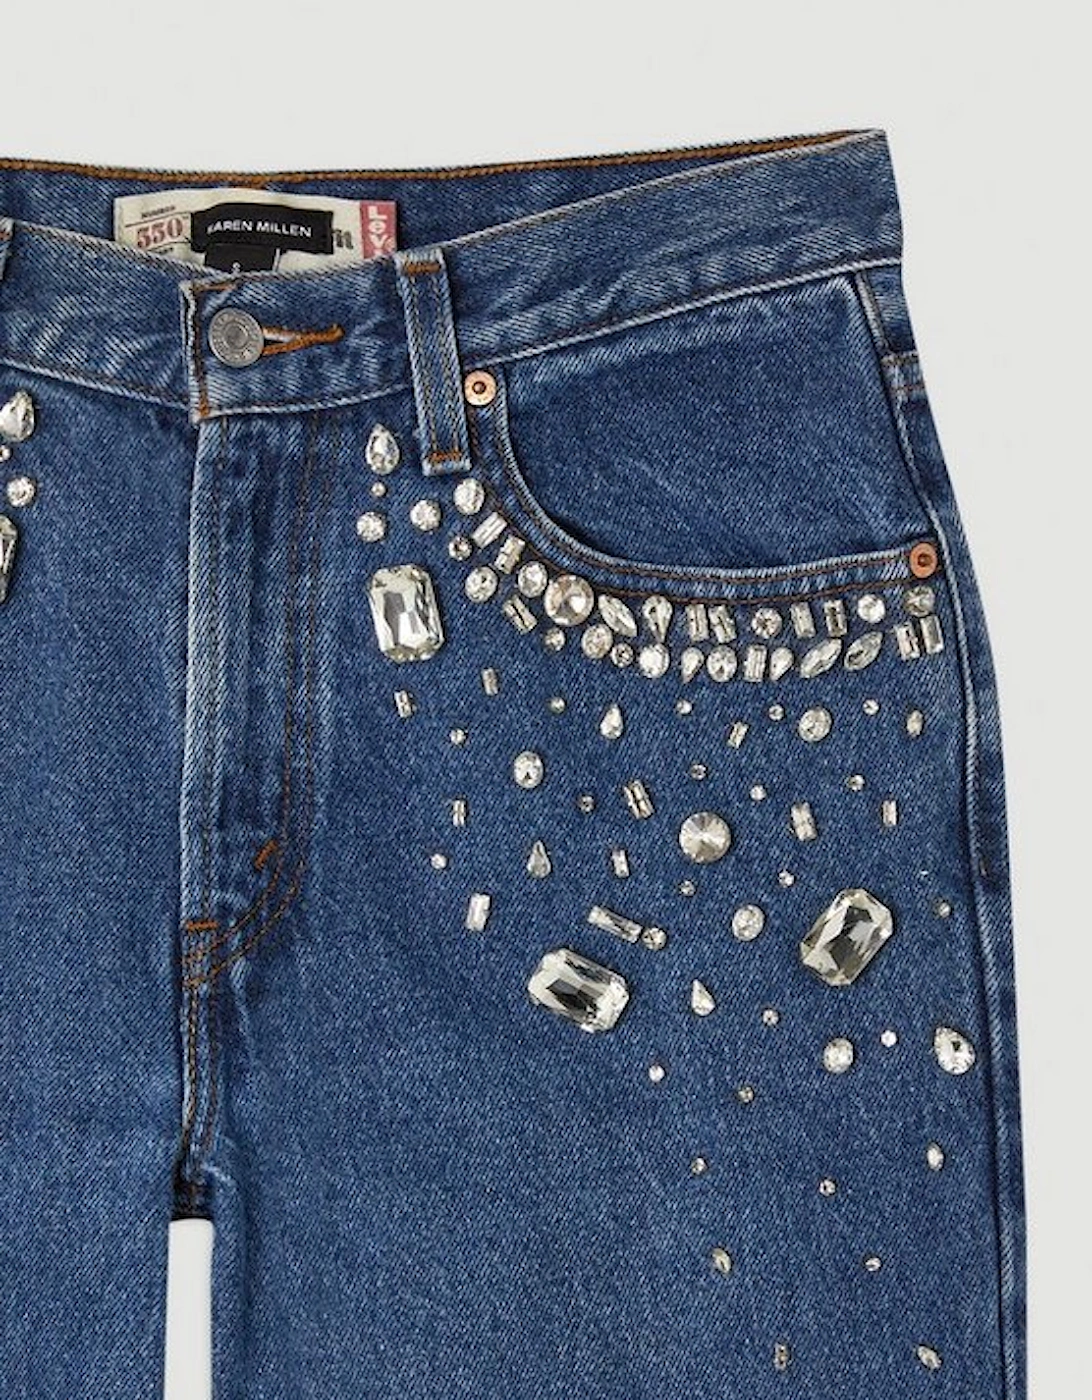 Hand Pocket Embellished Vintage Jeans